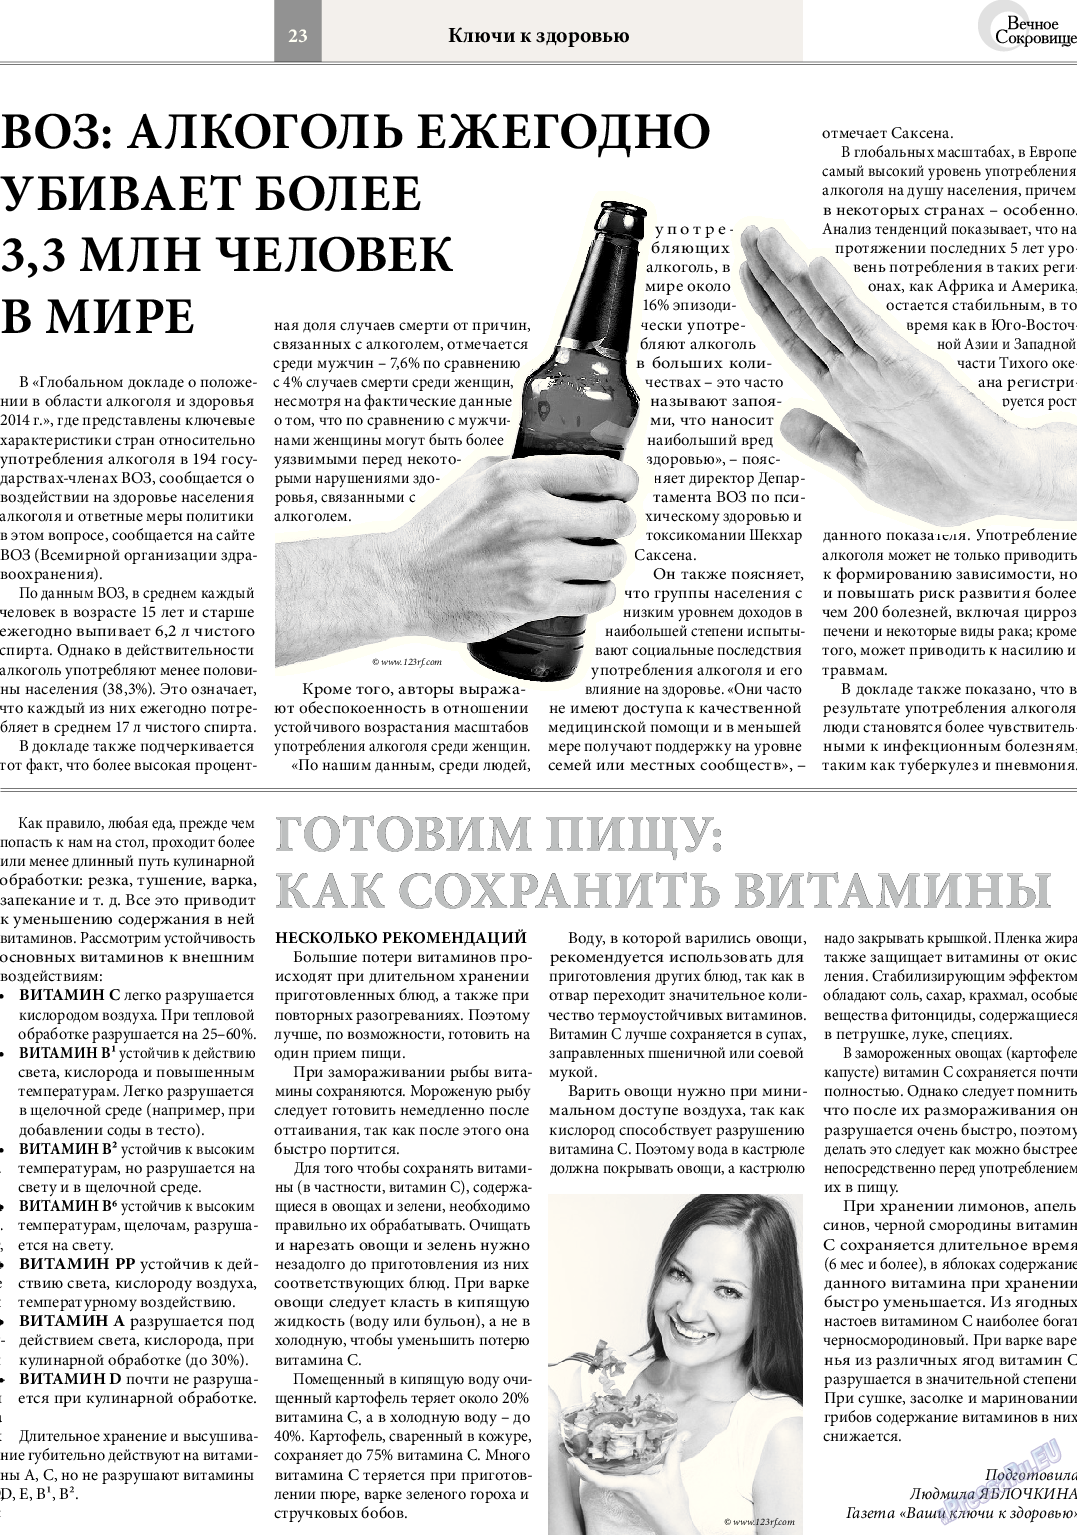 Вечное сокровище (газета). 2014 год, номер 3, стр. 23